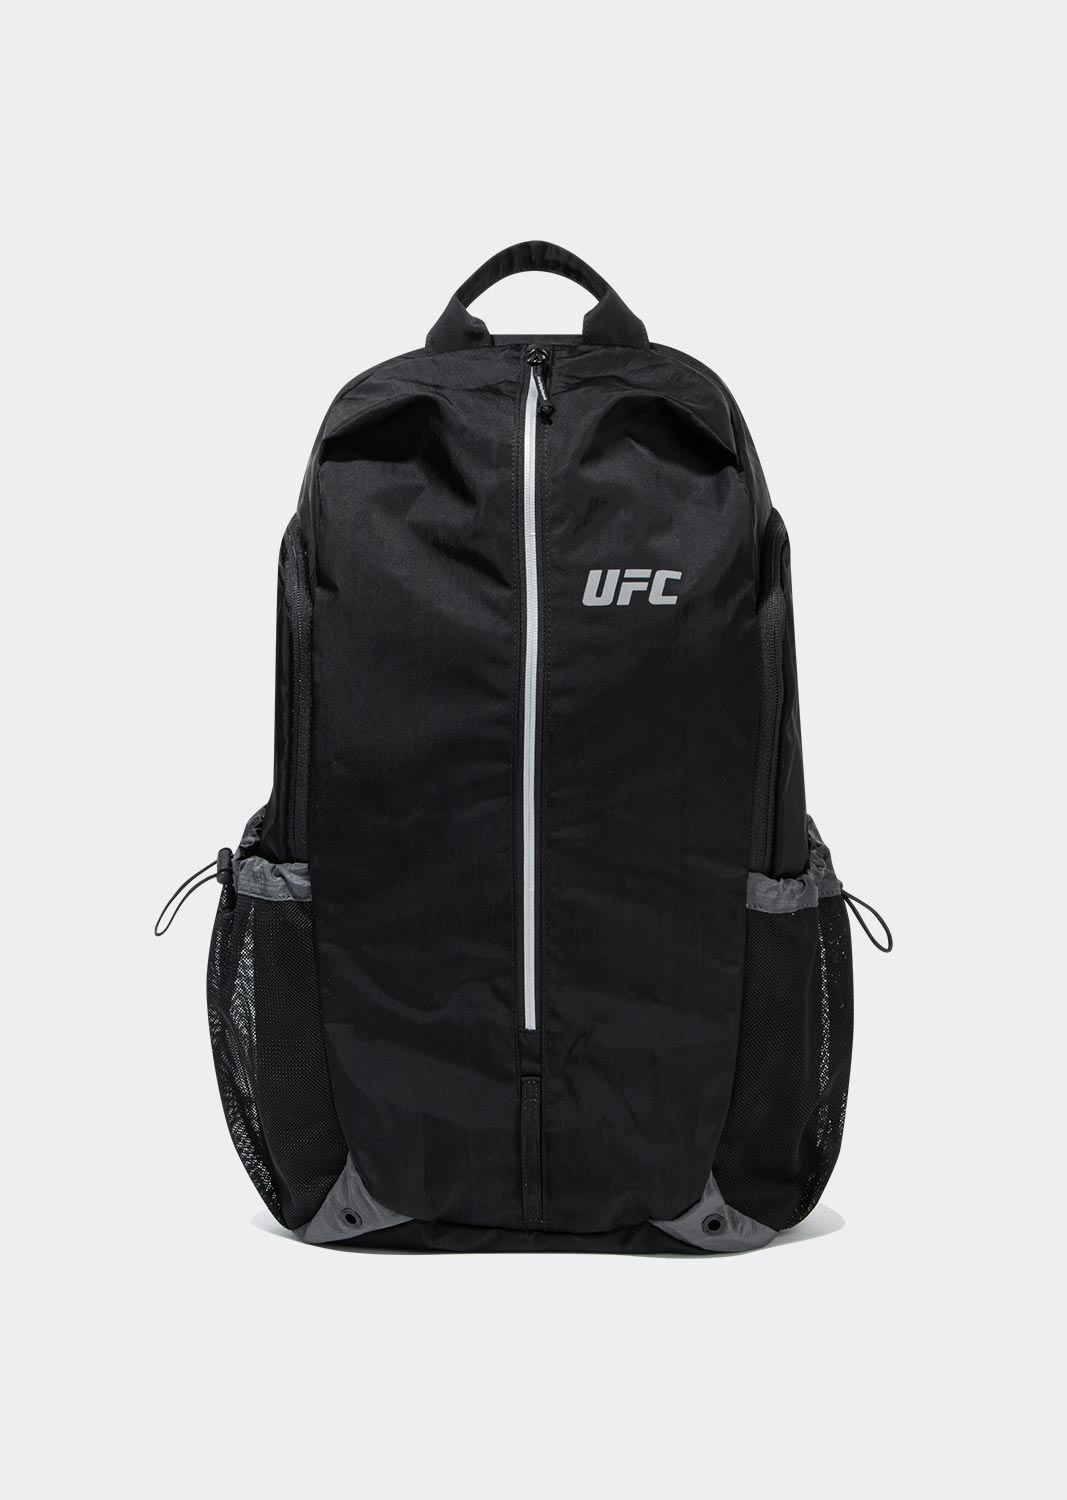 UFC 블레이즈+백팩 블랙 U4BPV1301BK